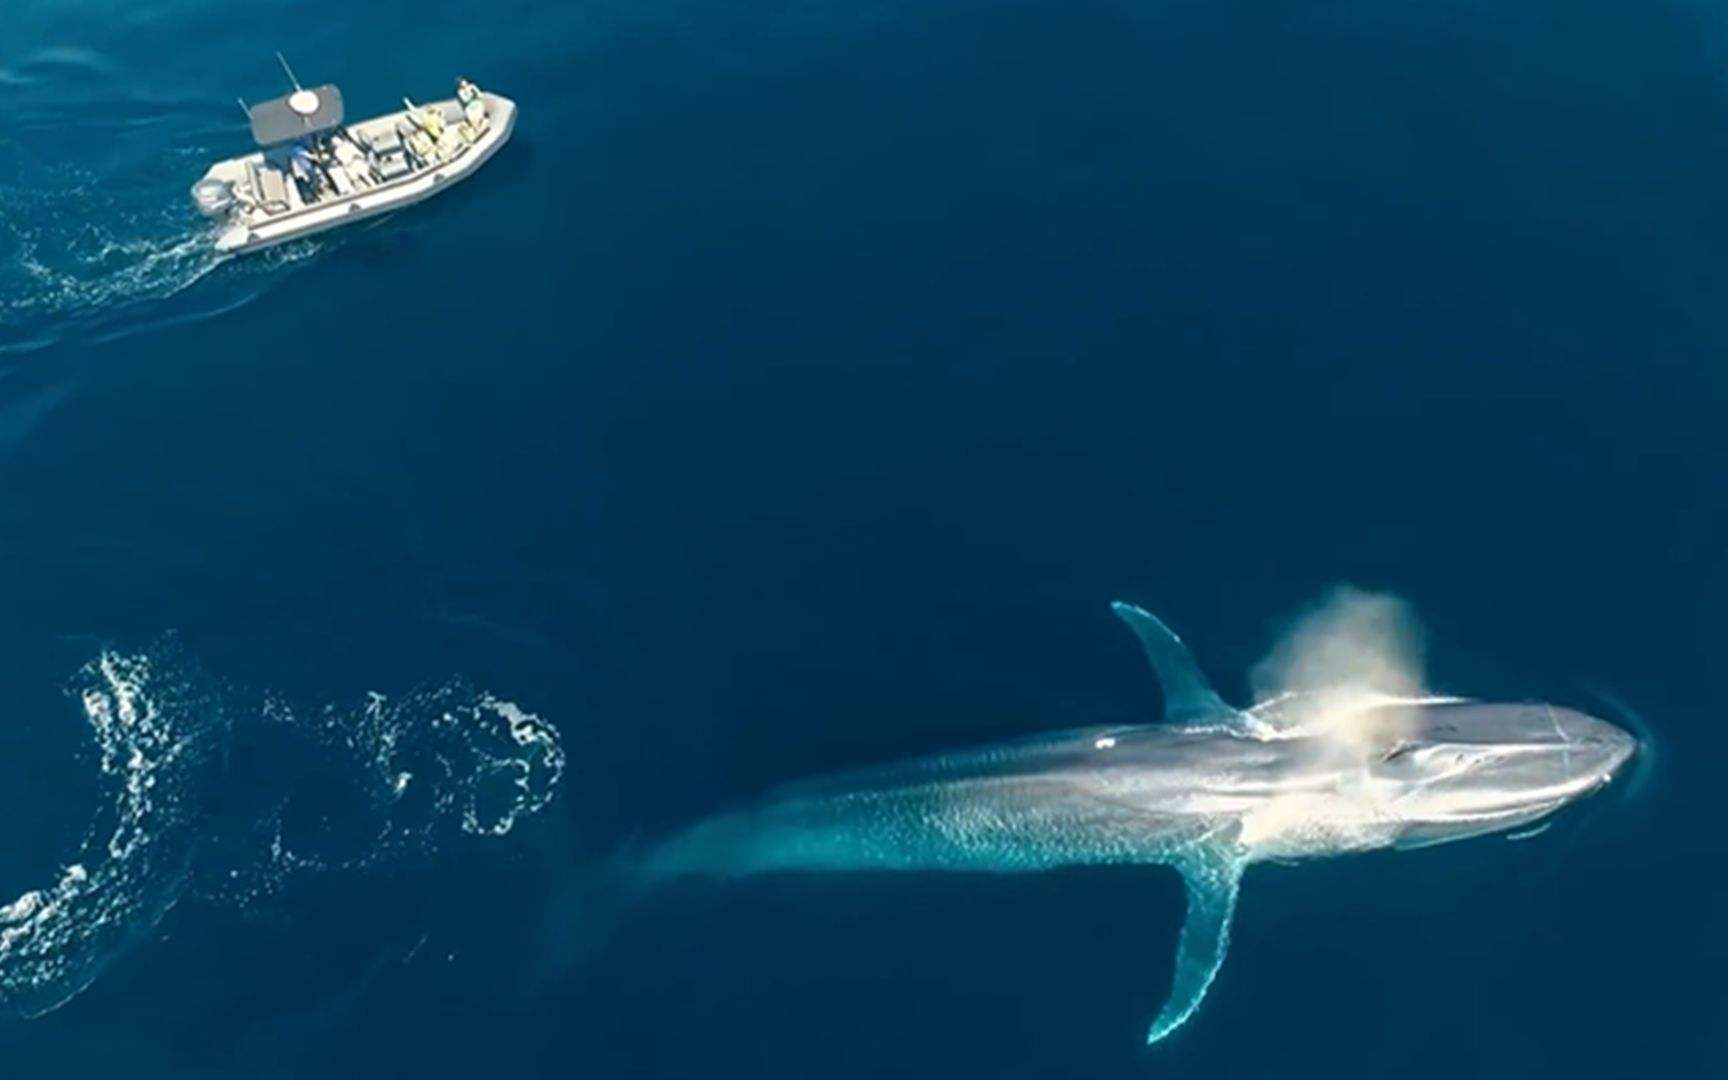 汤加 鲸鱼 斐济 鲨鱼潜水 Ow可报名 7月28号出发 12天深度行程 2个名